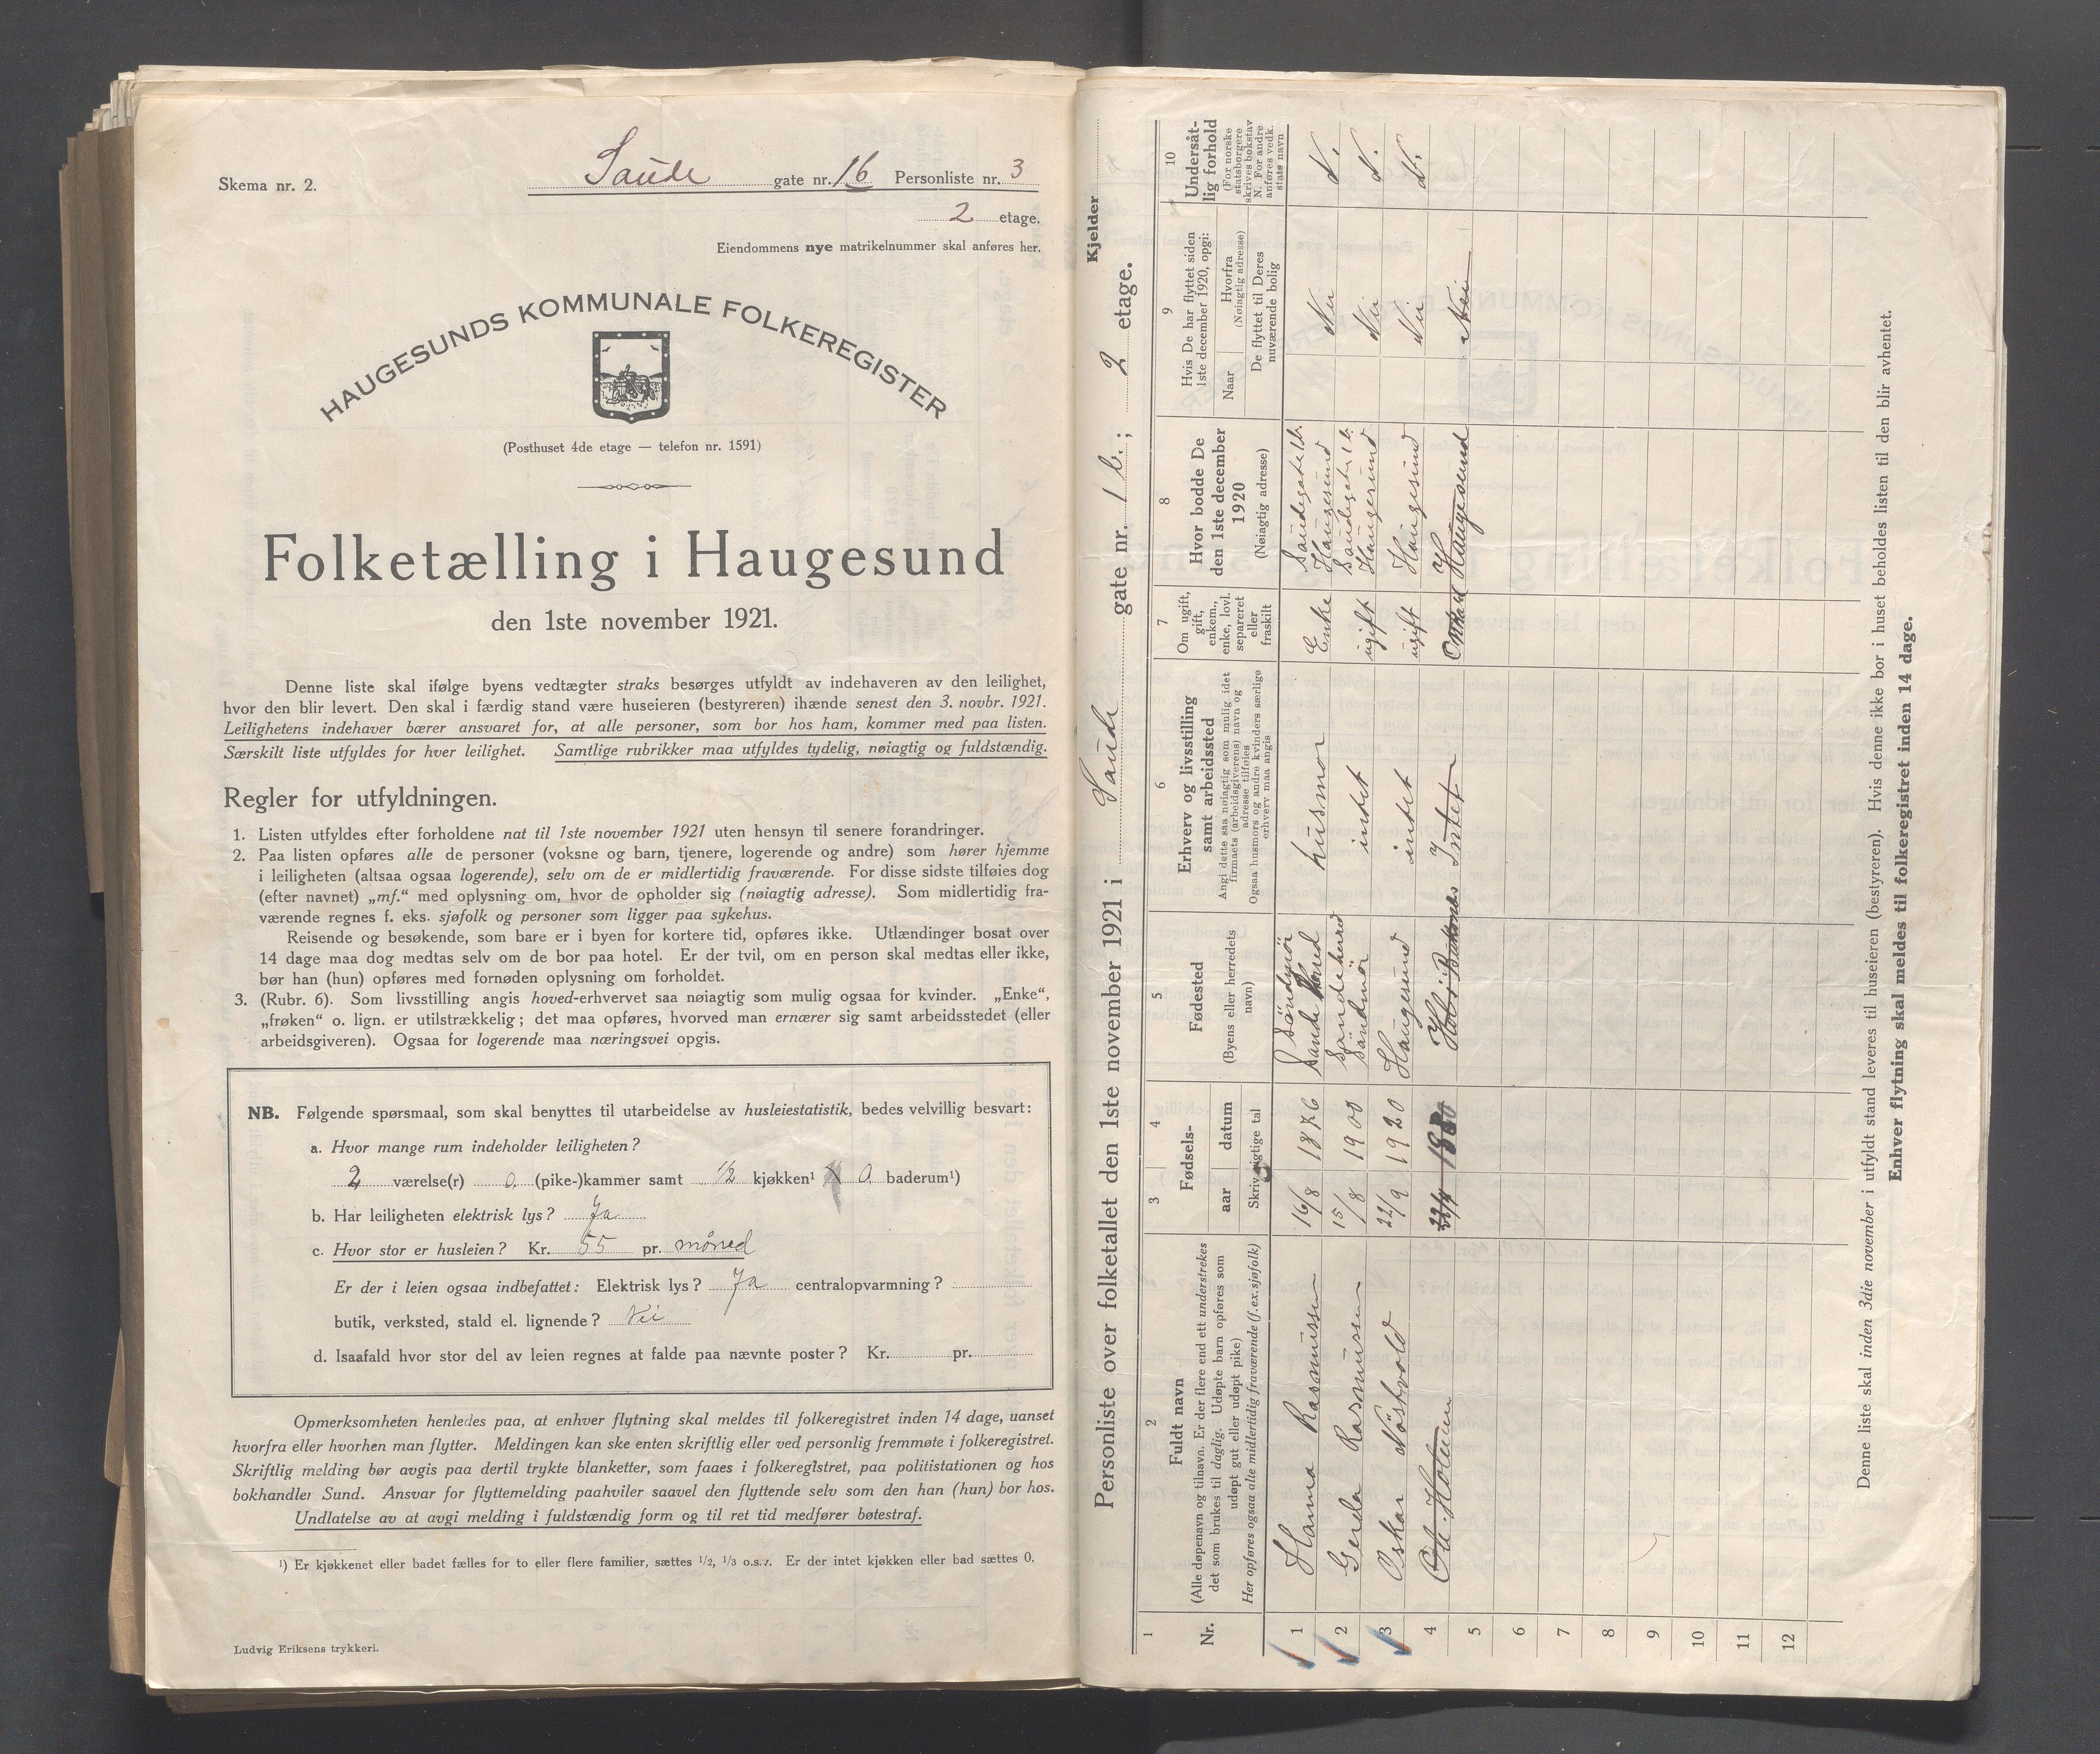 IKAR, Local census 1.11.1921 for Haugesund, 1921, p. 3598